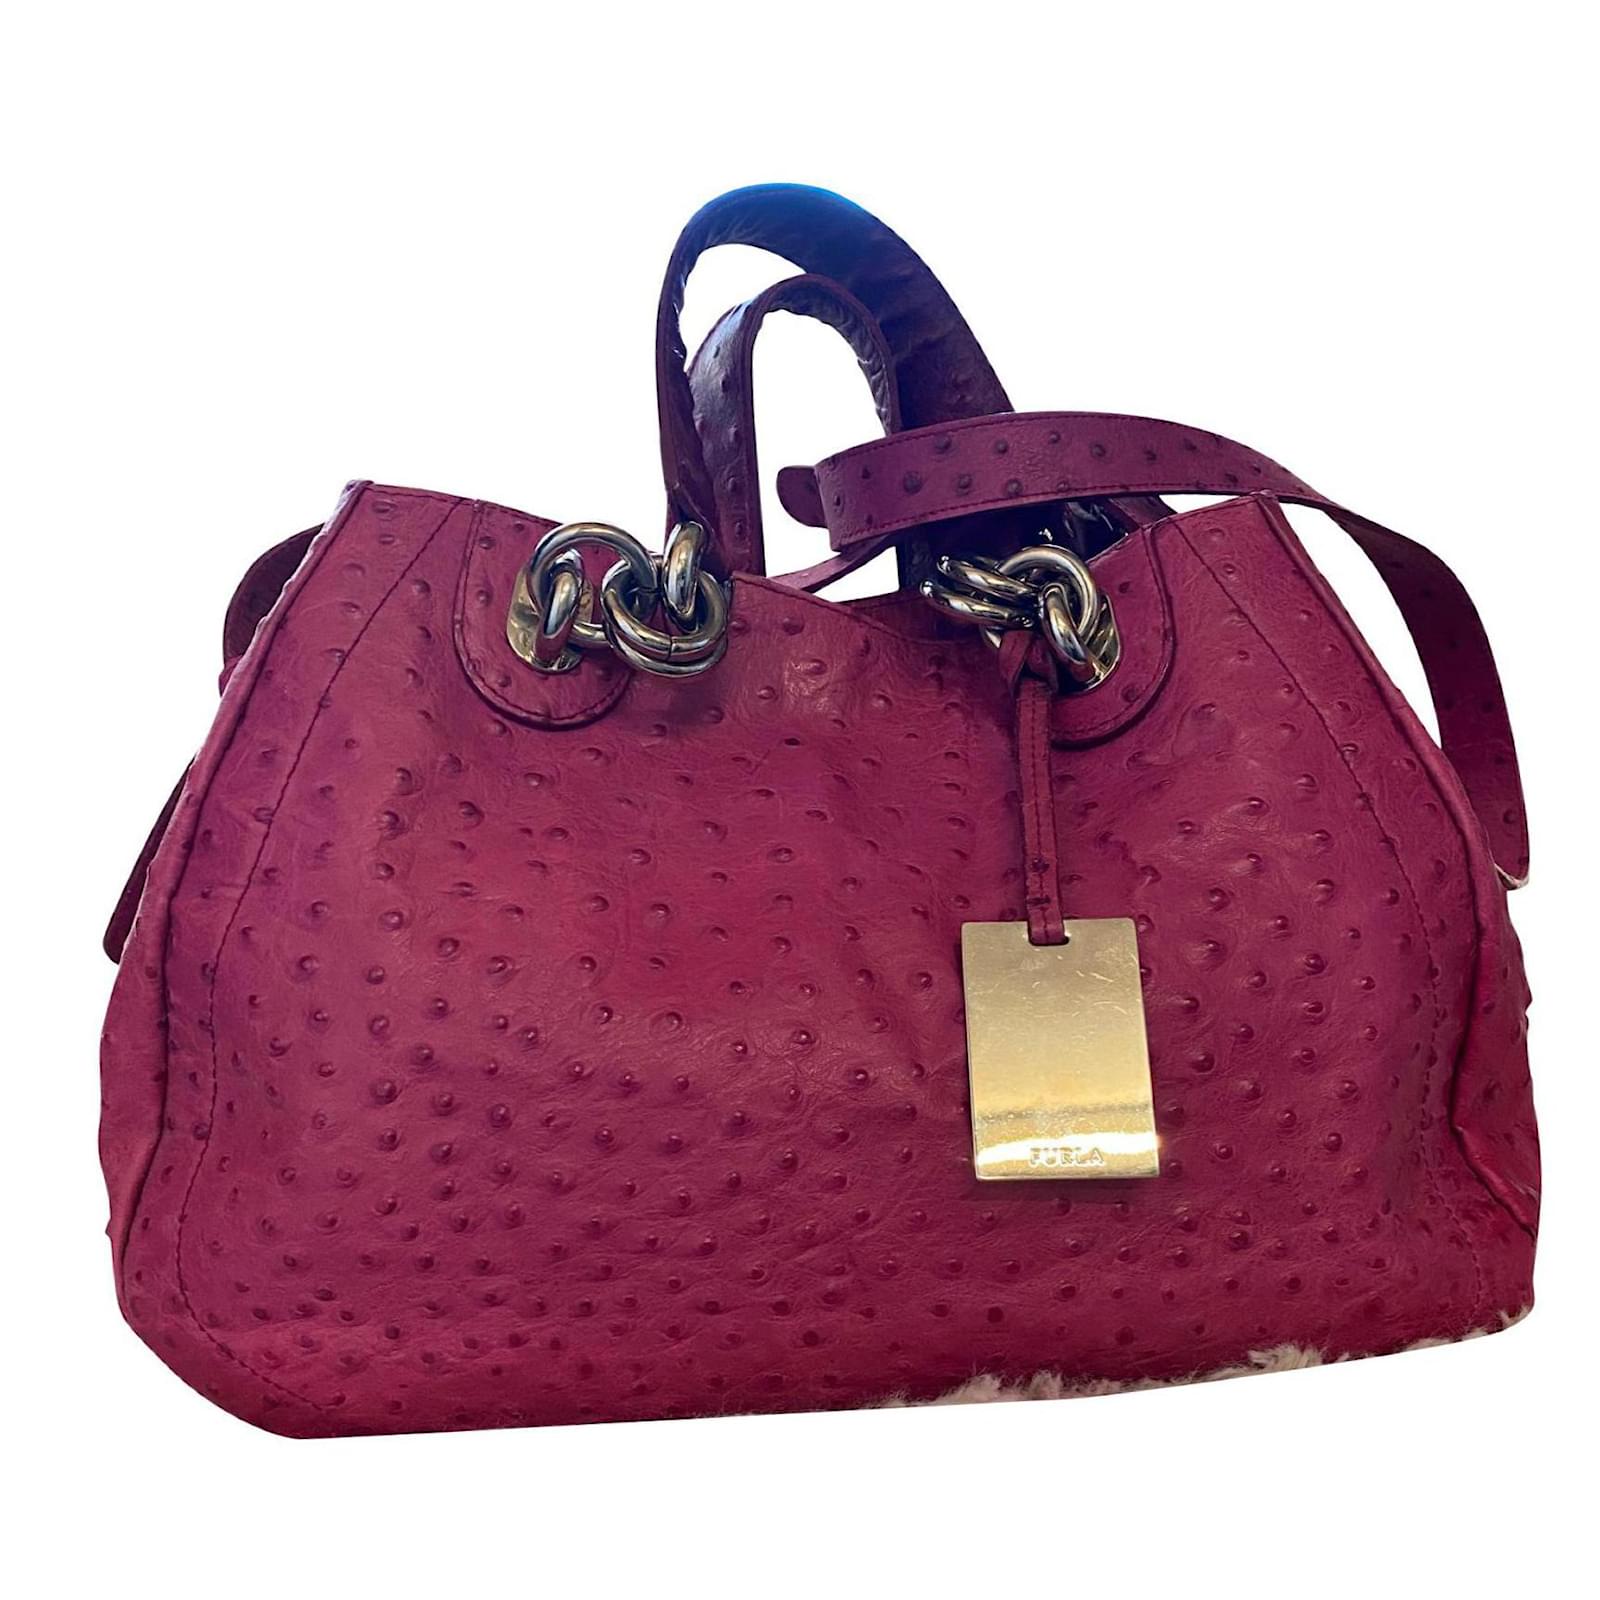 Furla Leather Vintage Handbags | Mercari